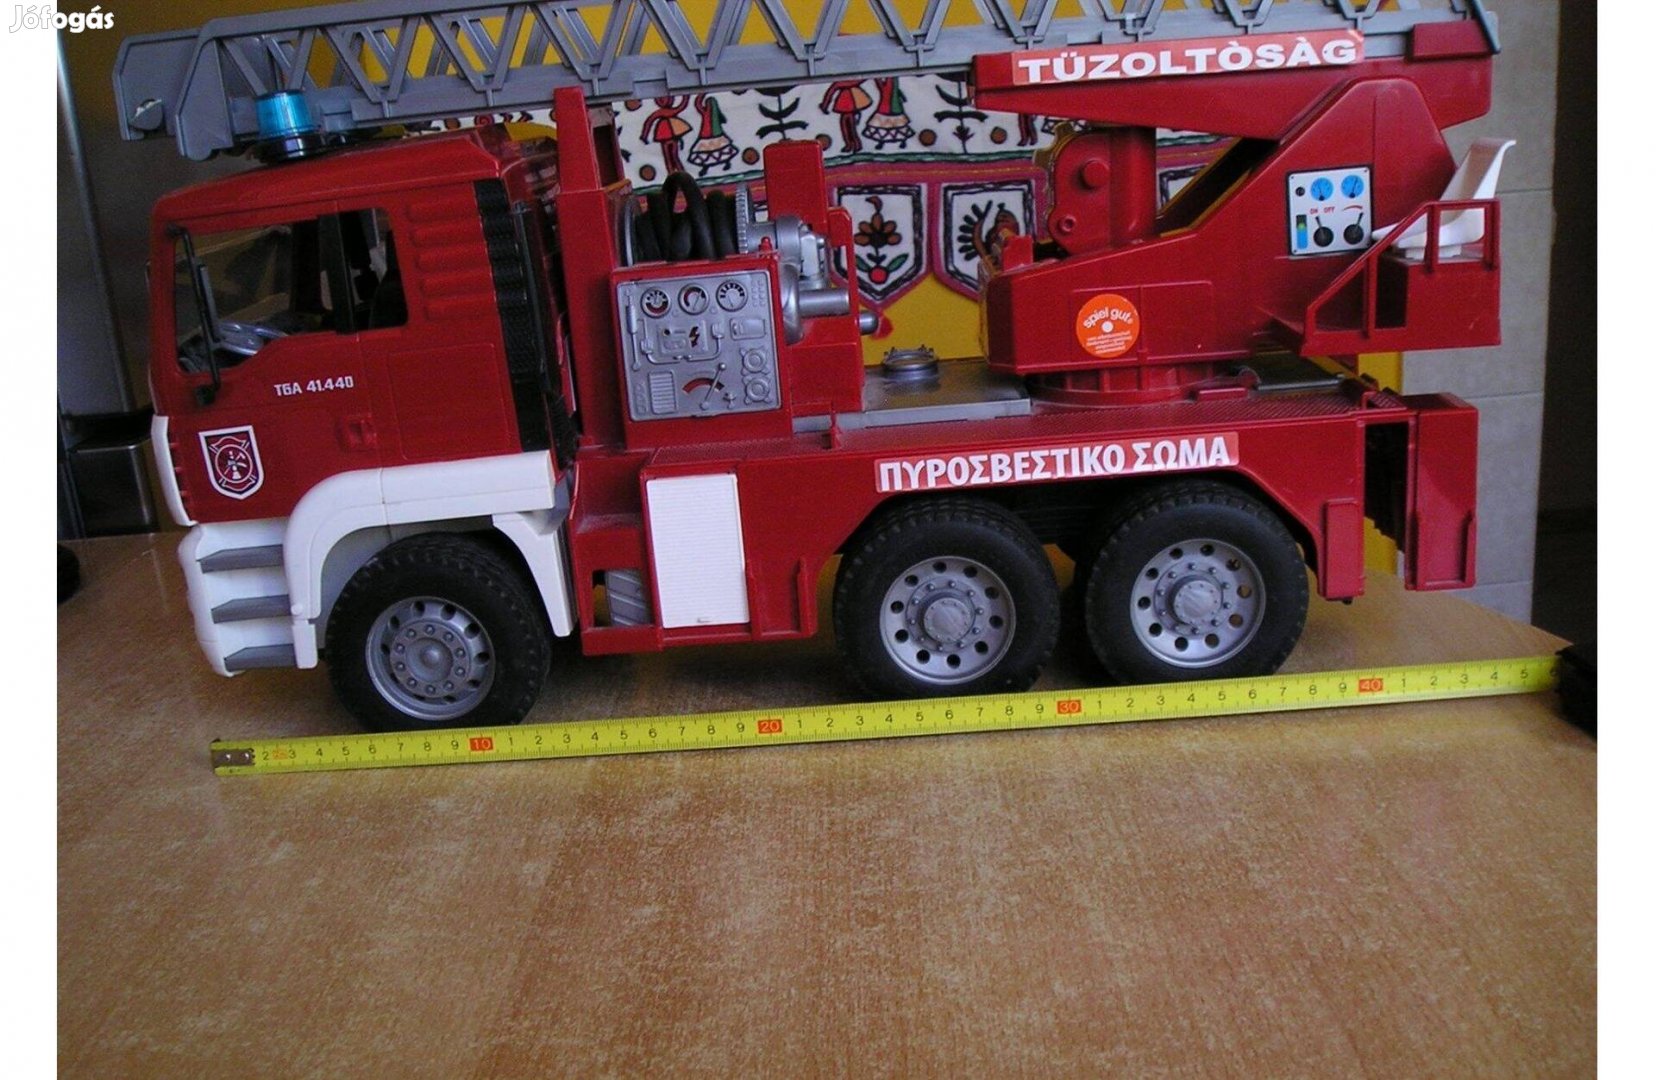 Tűzoltóautó-makett, nagy - 47 cm